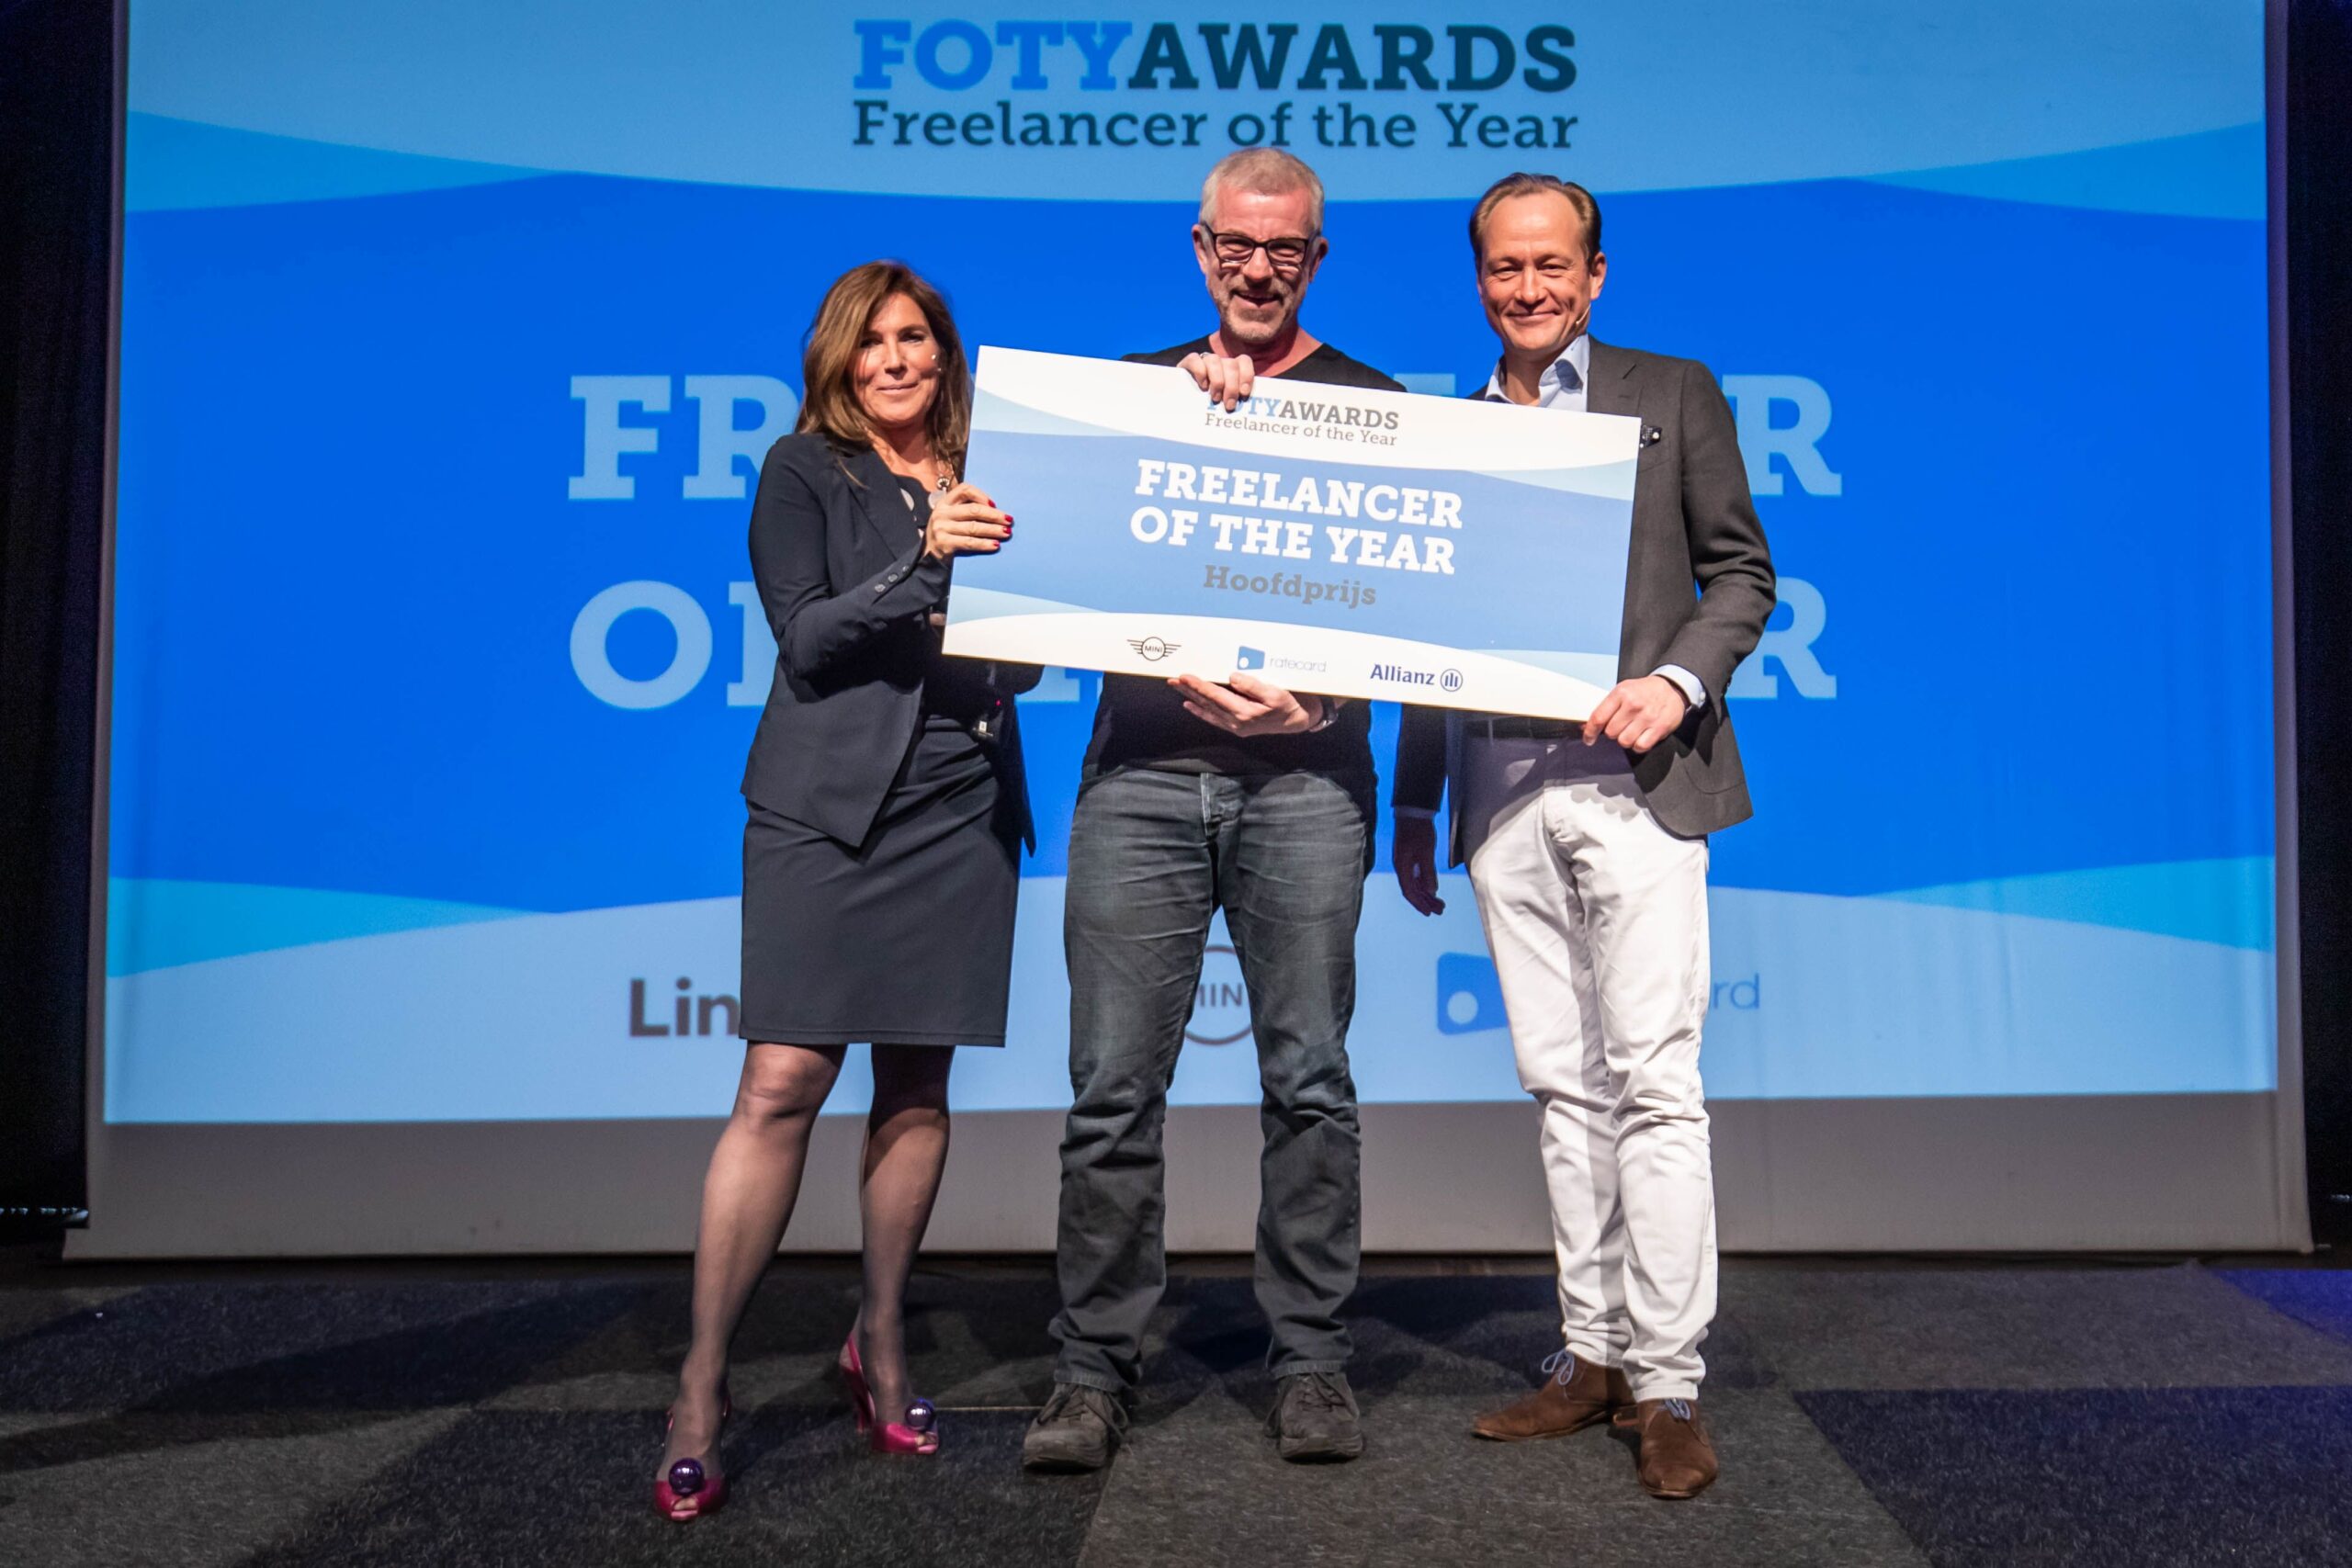 David Beckett ontvangt de FOTY Award 2019 van Claudia Zuiderwijk, bestuursvoorzitter KvK